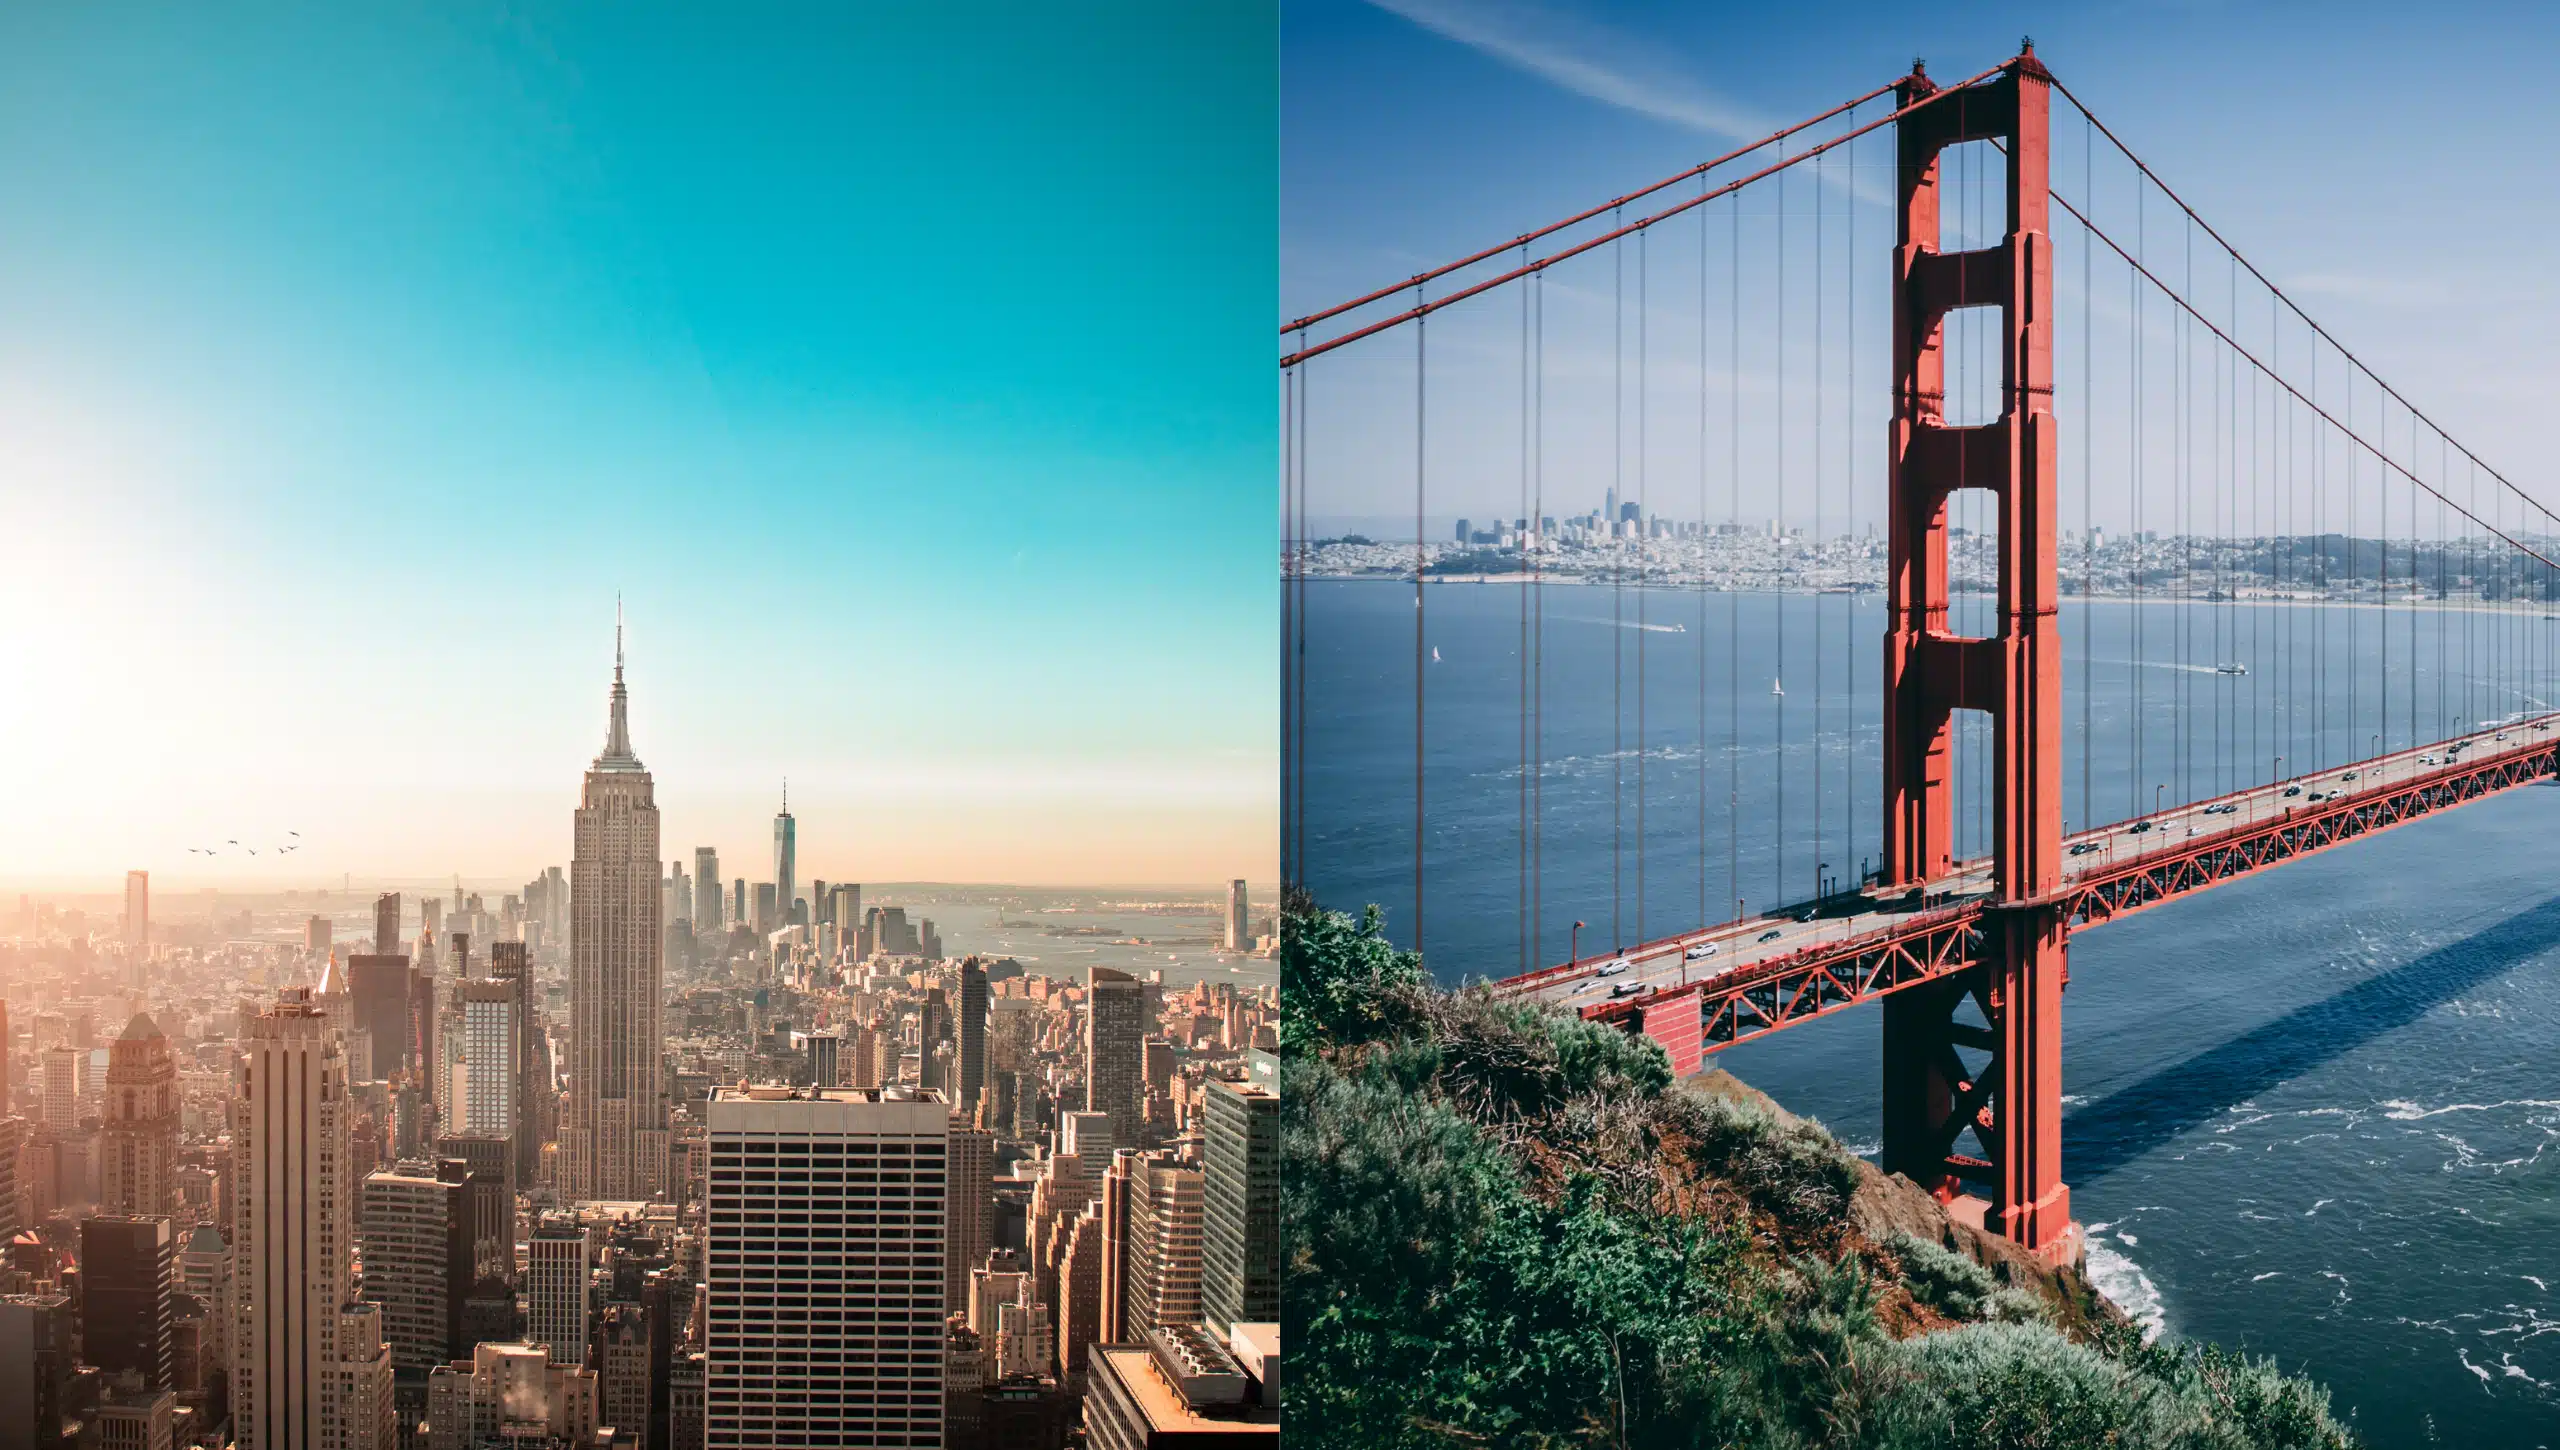 Lins die Skyline einer Stadt, Rechts die Golden Gate Brücke